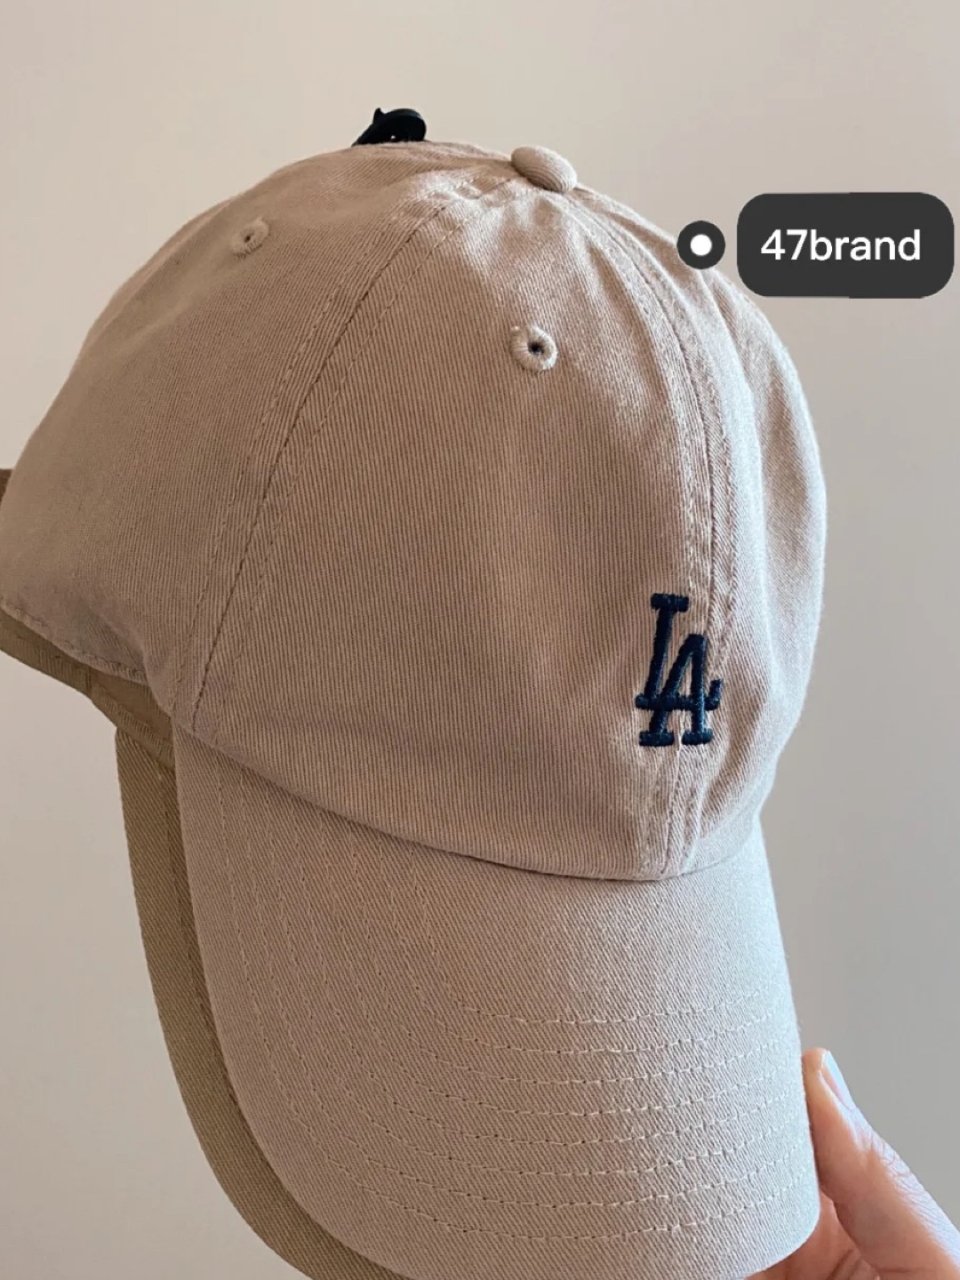 找到了在美国买好看棒球帽的网站...